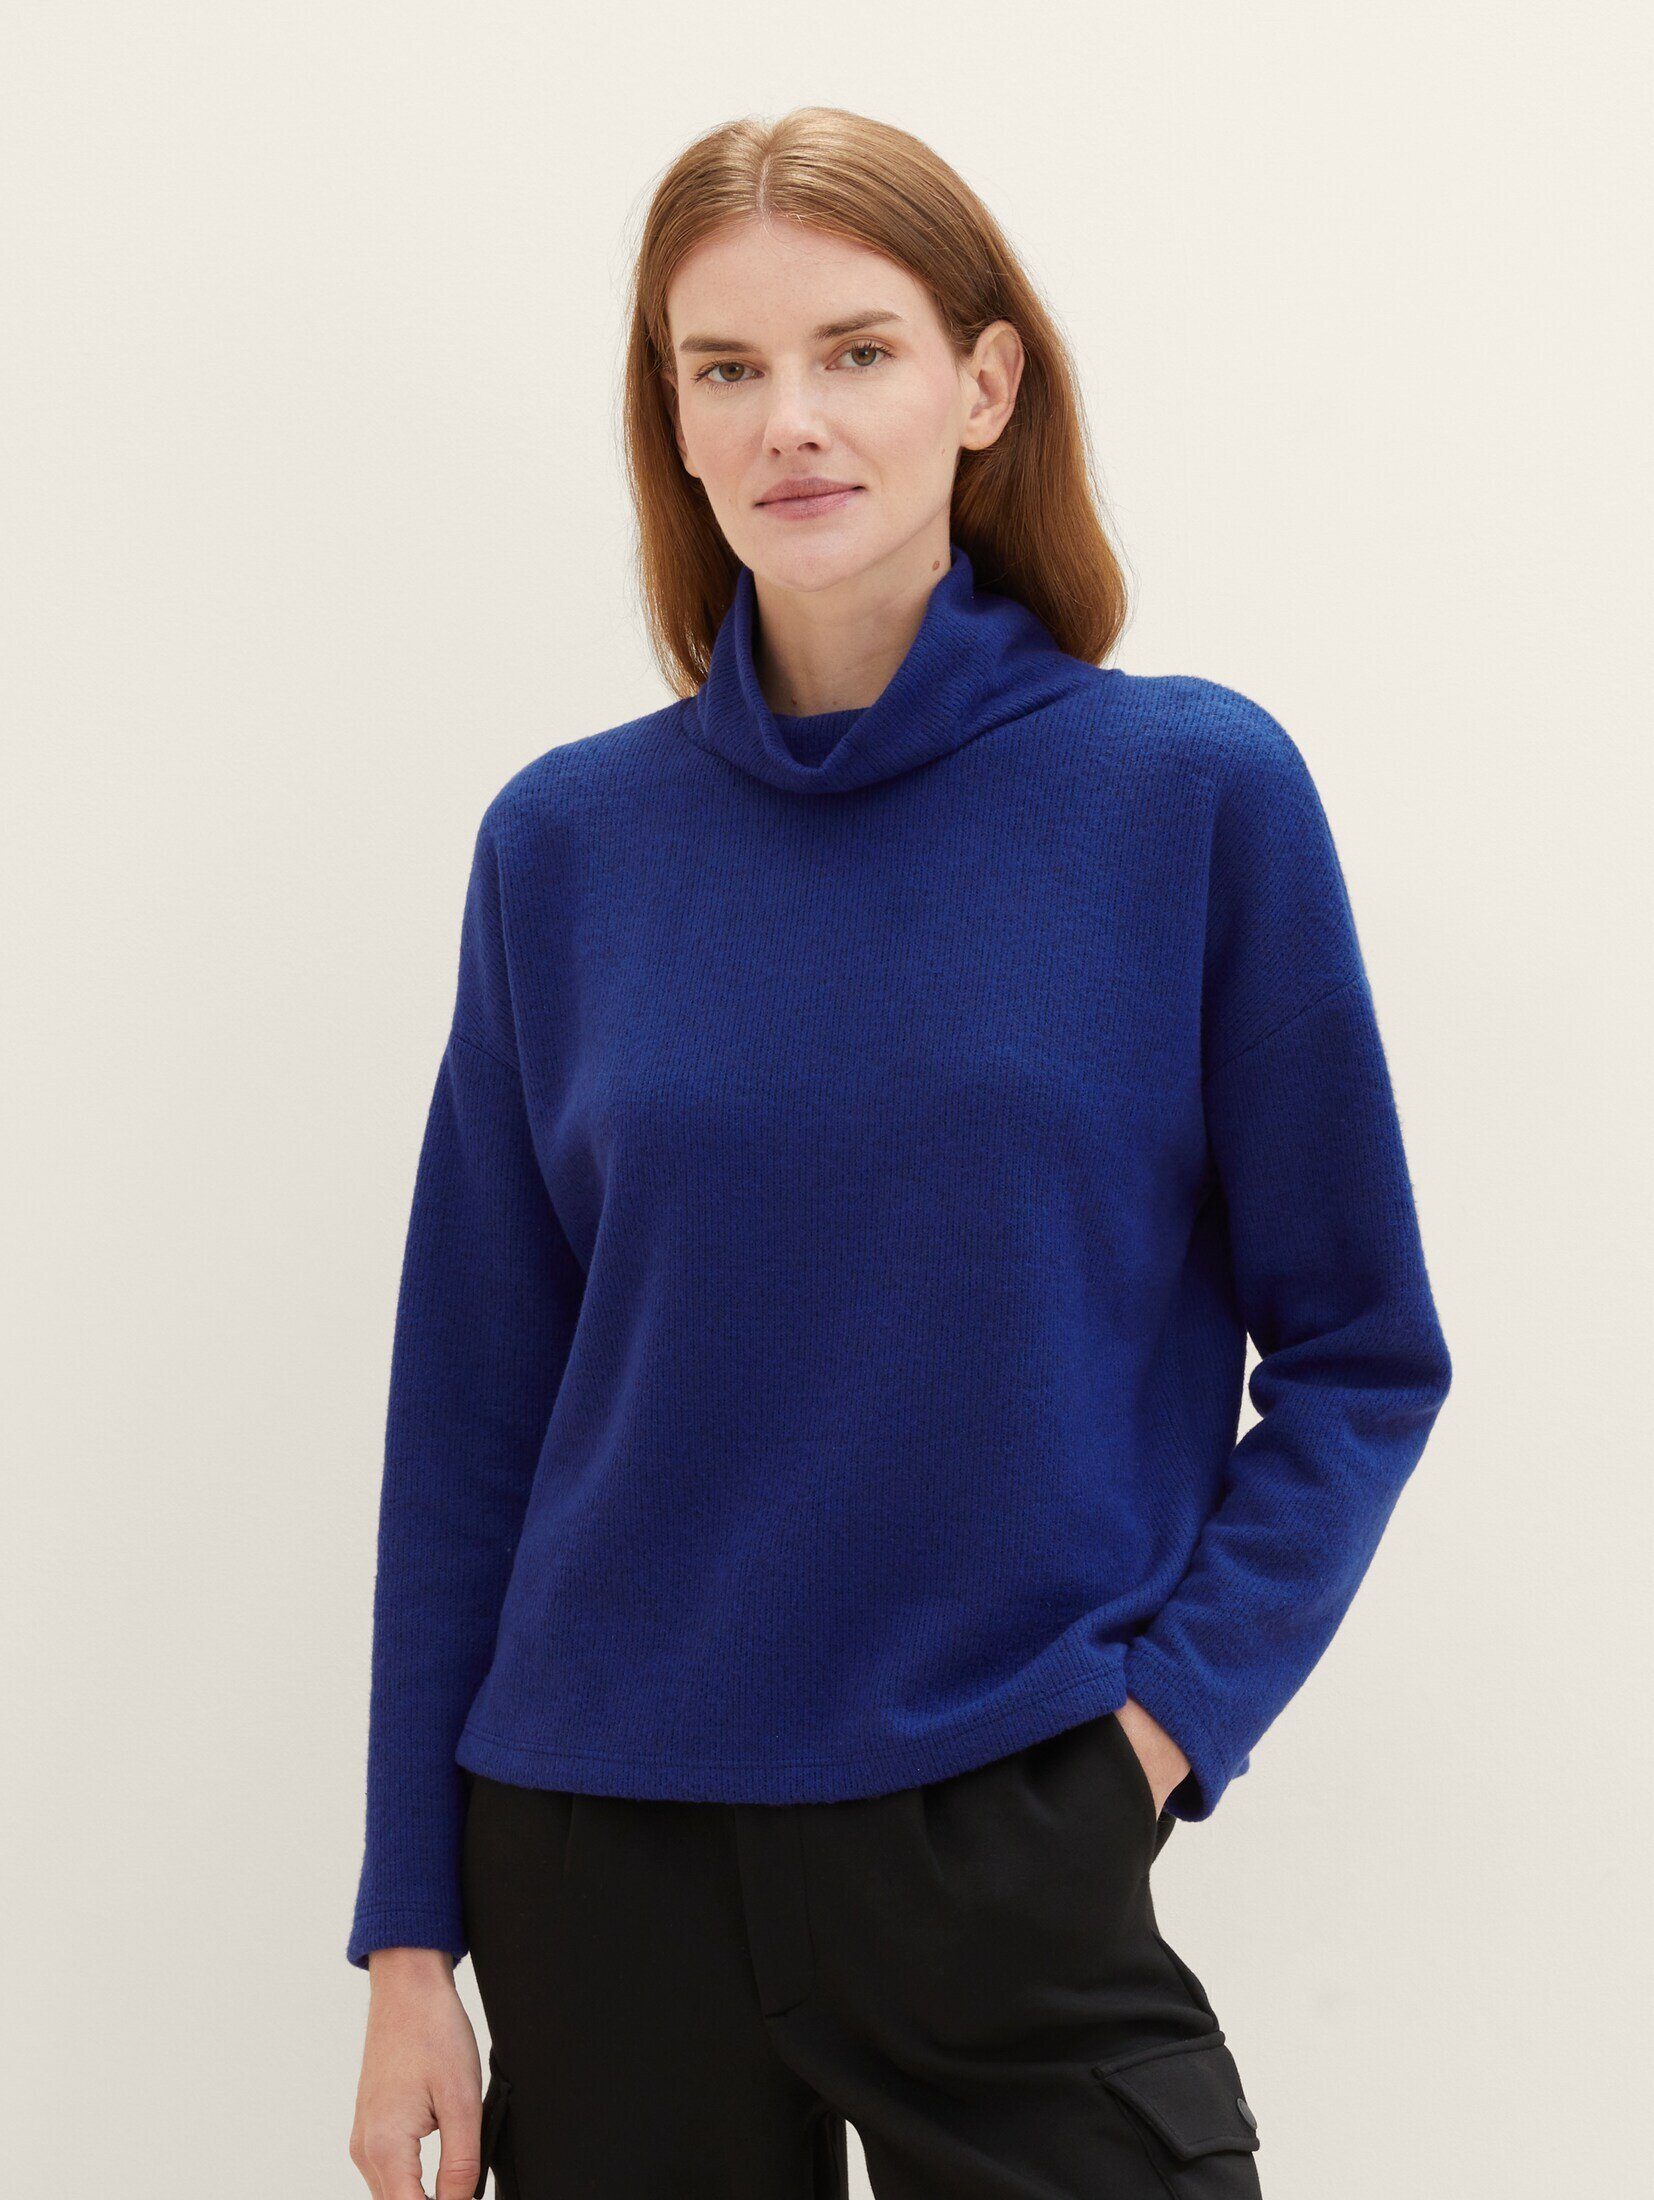 Im Trend TOM TAILOR Sweatshirt Bequemes mit crest blue Rollkragen Sweatshirt melange